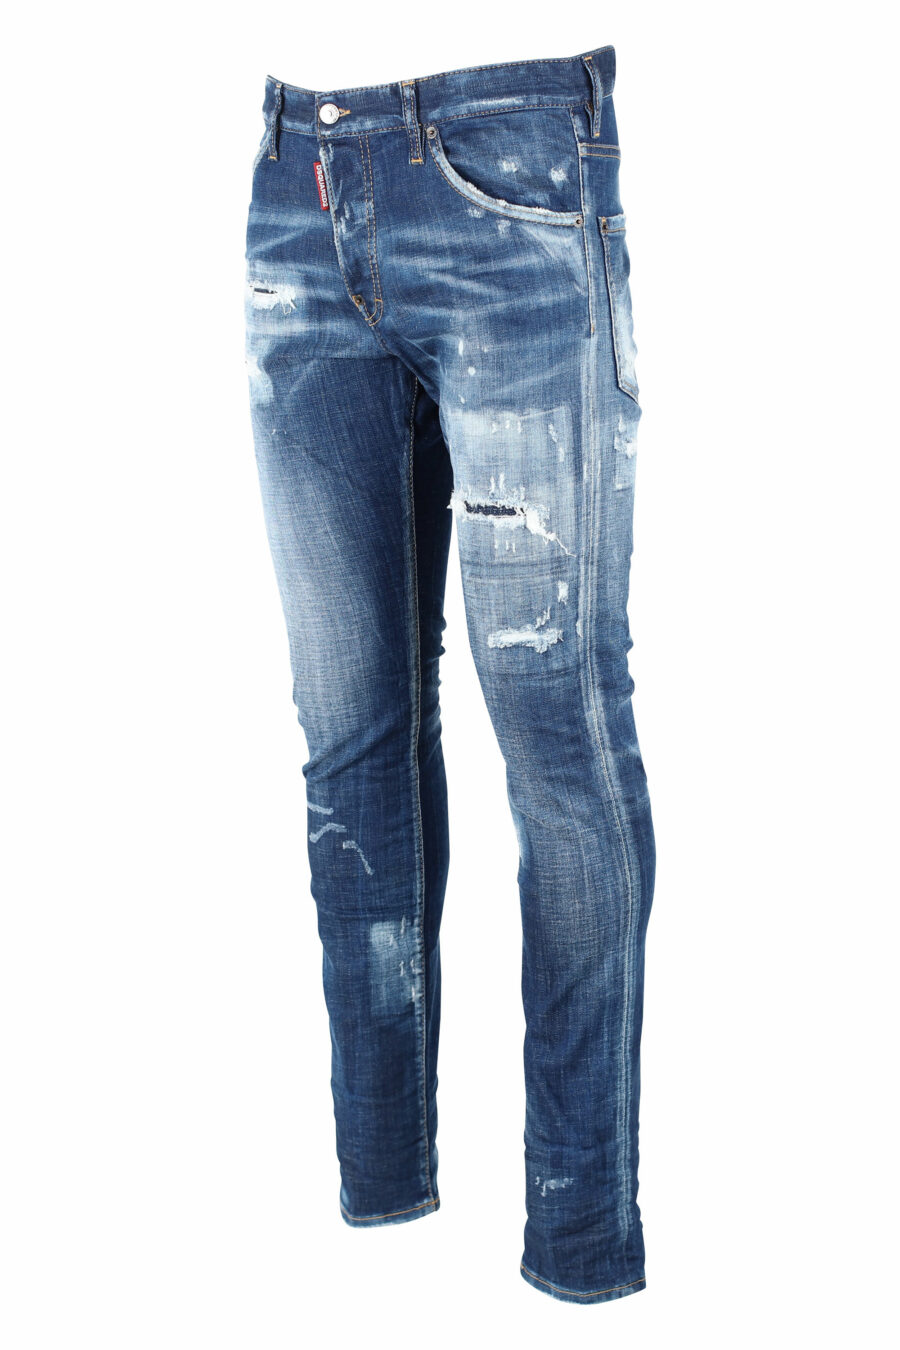 Pantalón vaquero "Cool guy jean" azul con rotos - IMG 0839